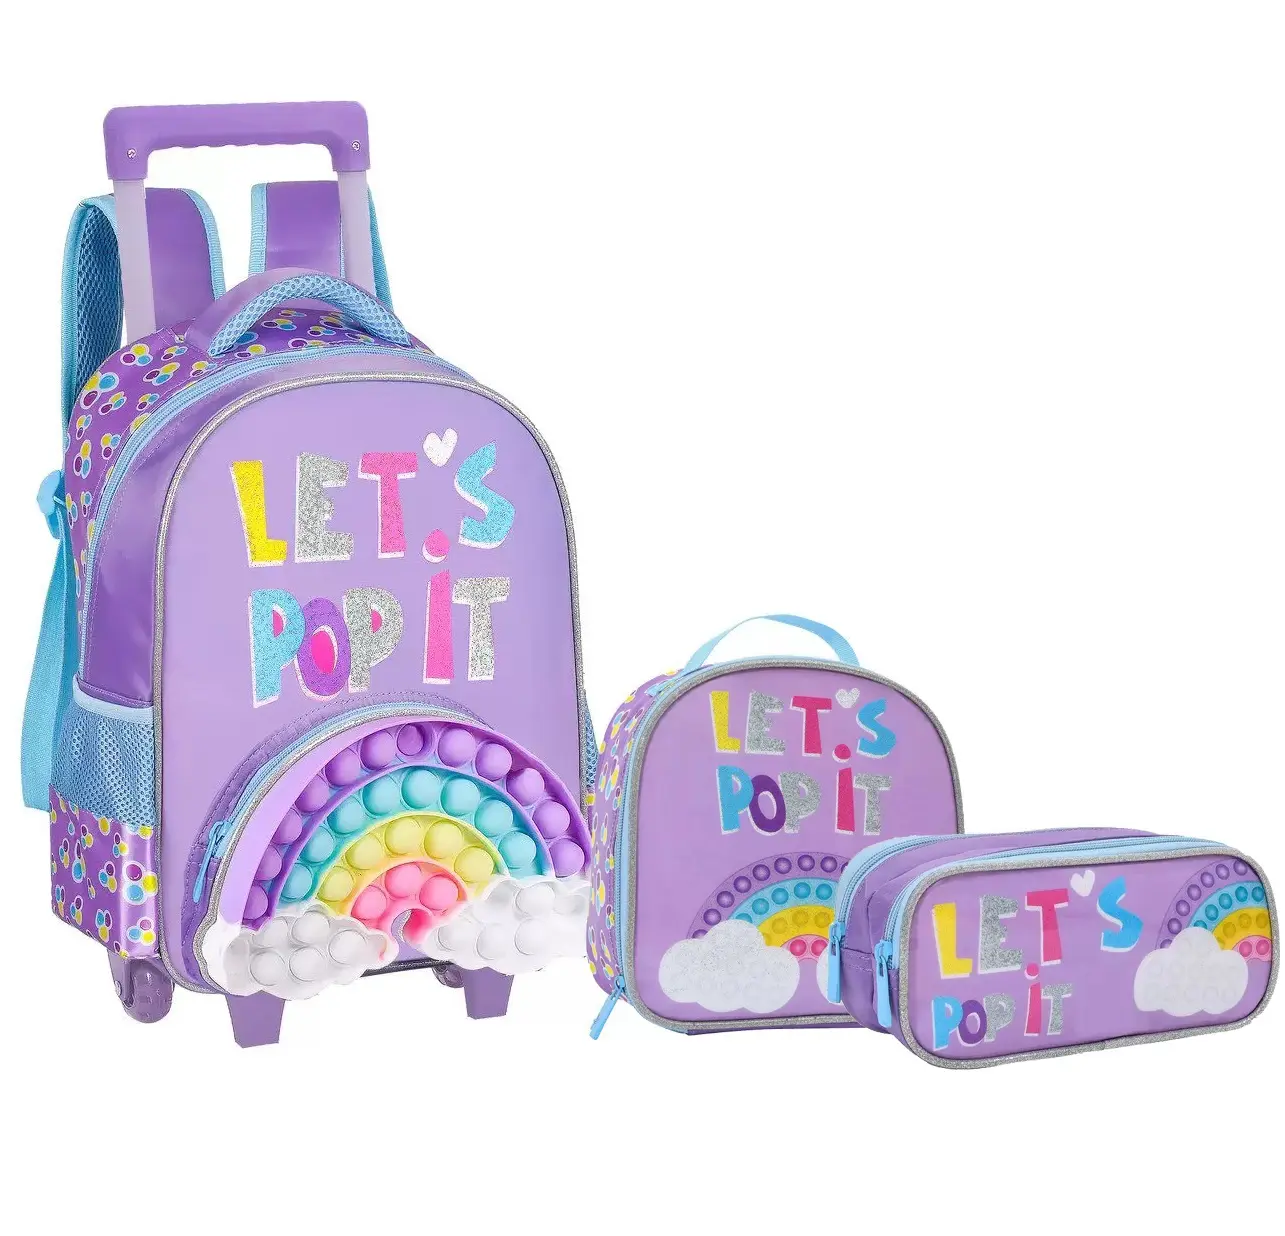 Bolsa escolar de arco-íris com novo design, conjunto de bolsa 3 em 1 com alça carrinho